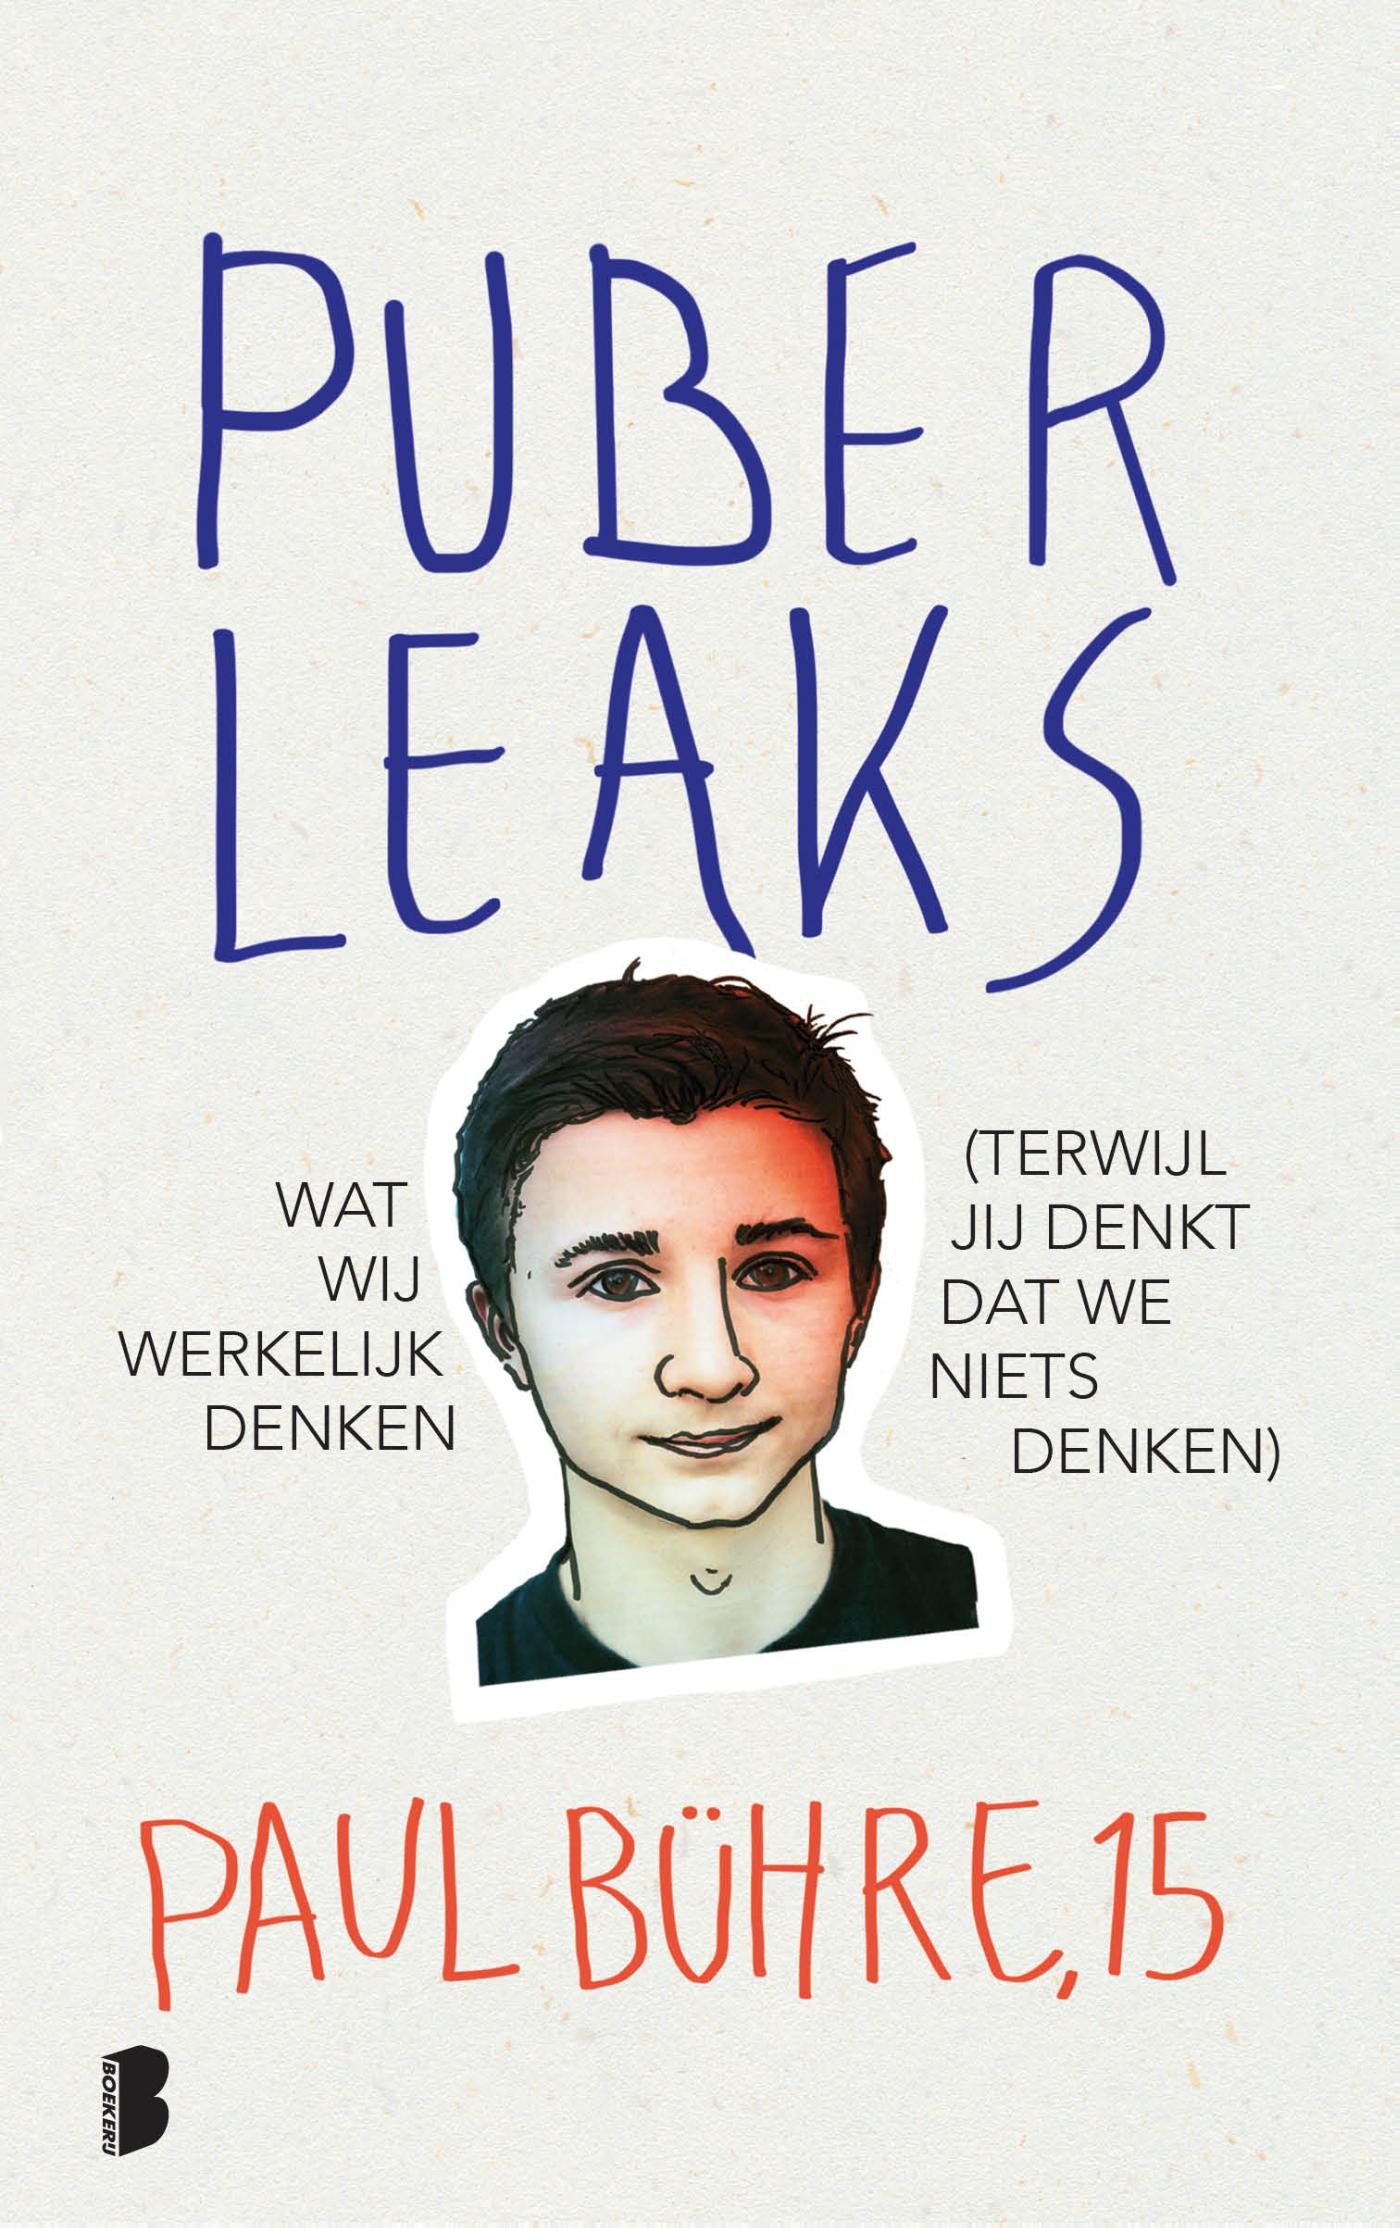 Puber Leaks